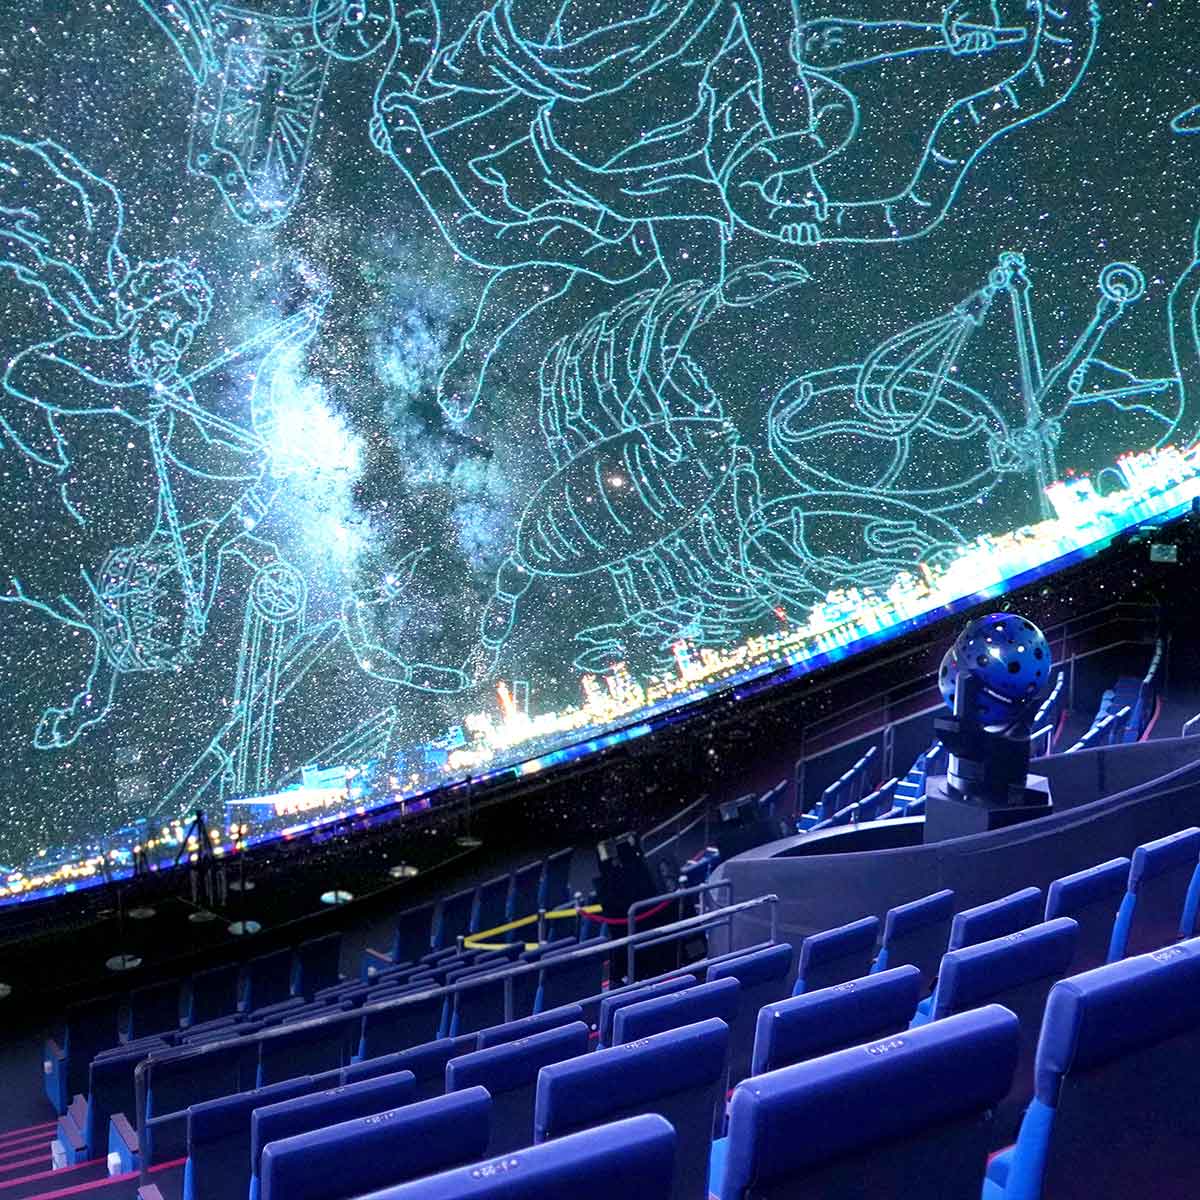 7億個の星を望む「はまぎん こども宇宙科学館」のプラネタリウムへ。宇宙船をイメージした館内で遊びながら学ぶ体験を